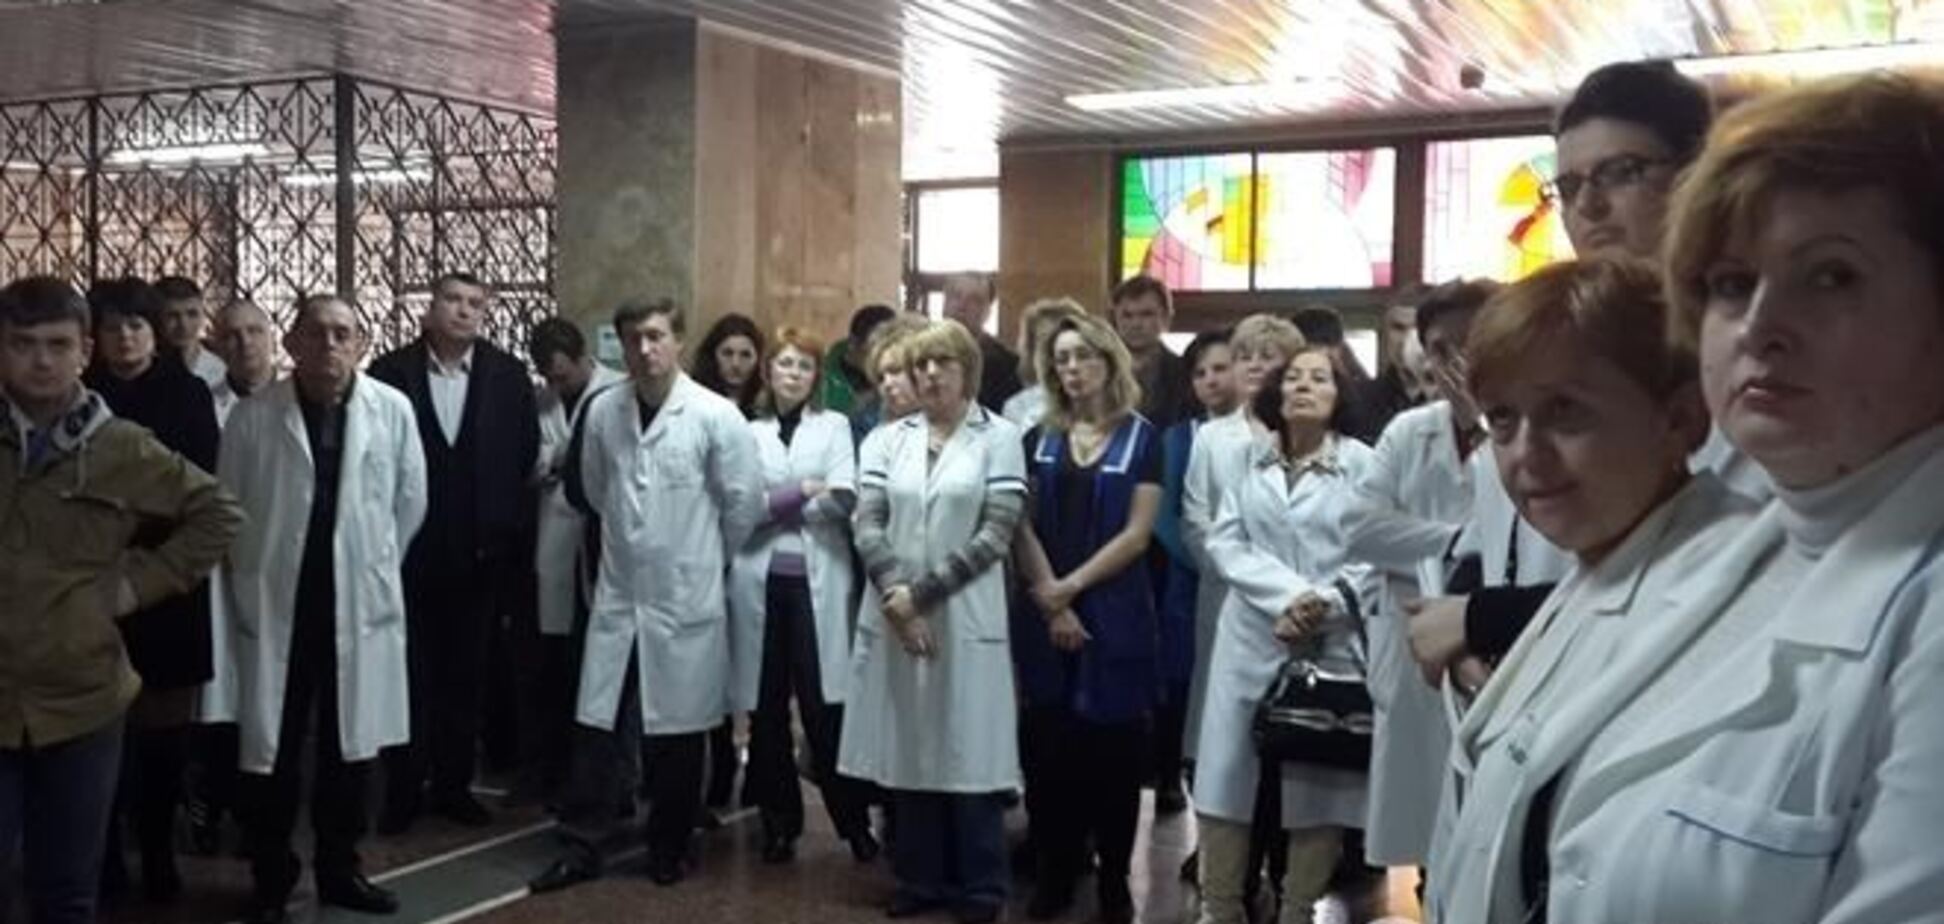 Коллектив Центра микрохирургии глаза выступил в поддержку главврача Рыкова